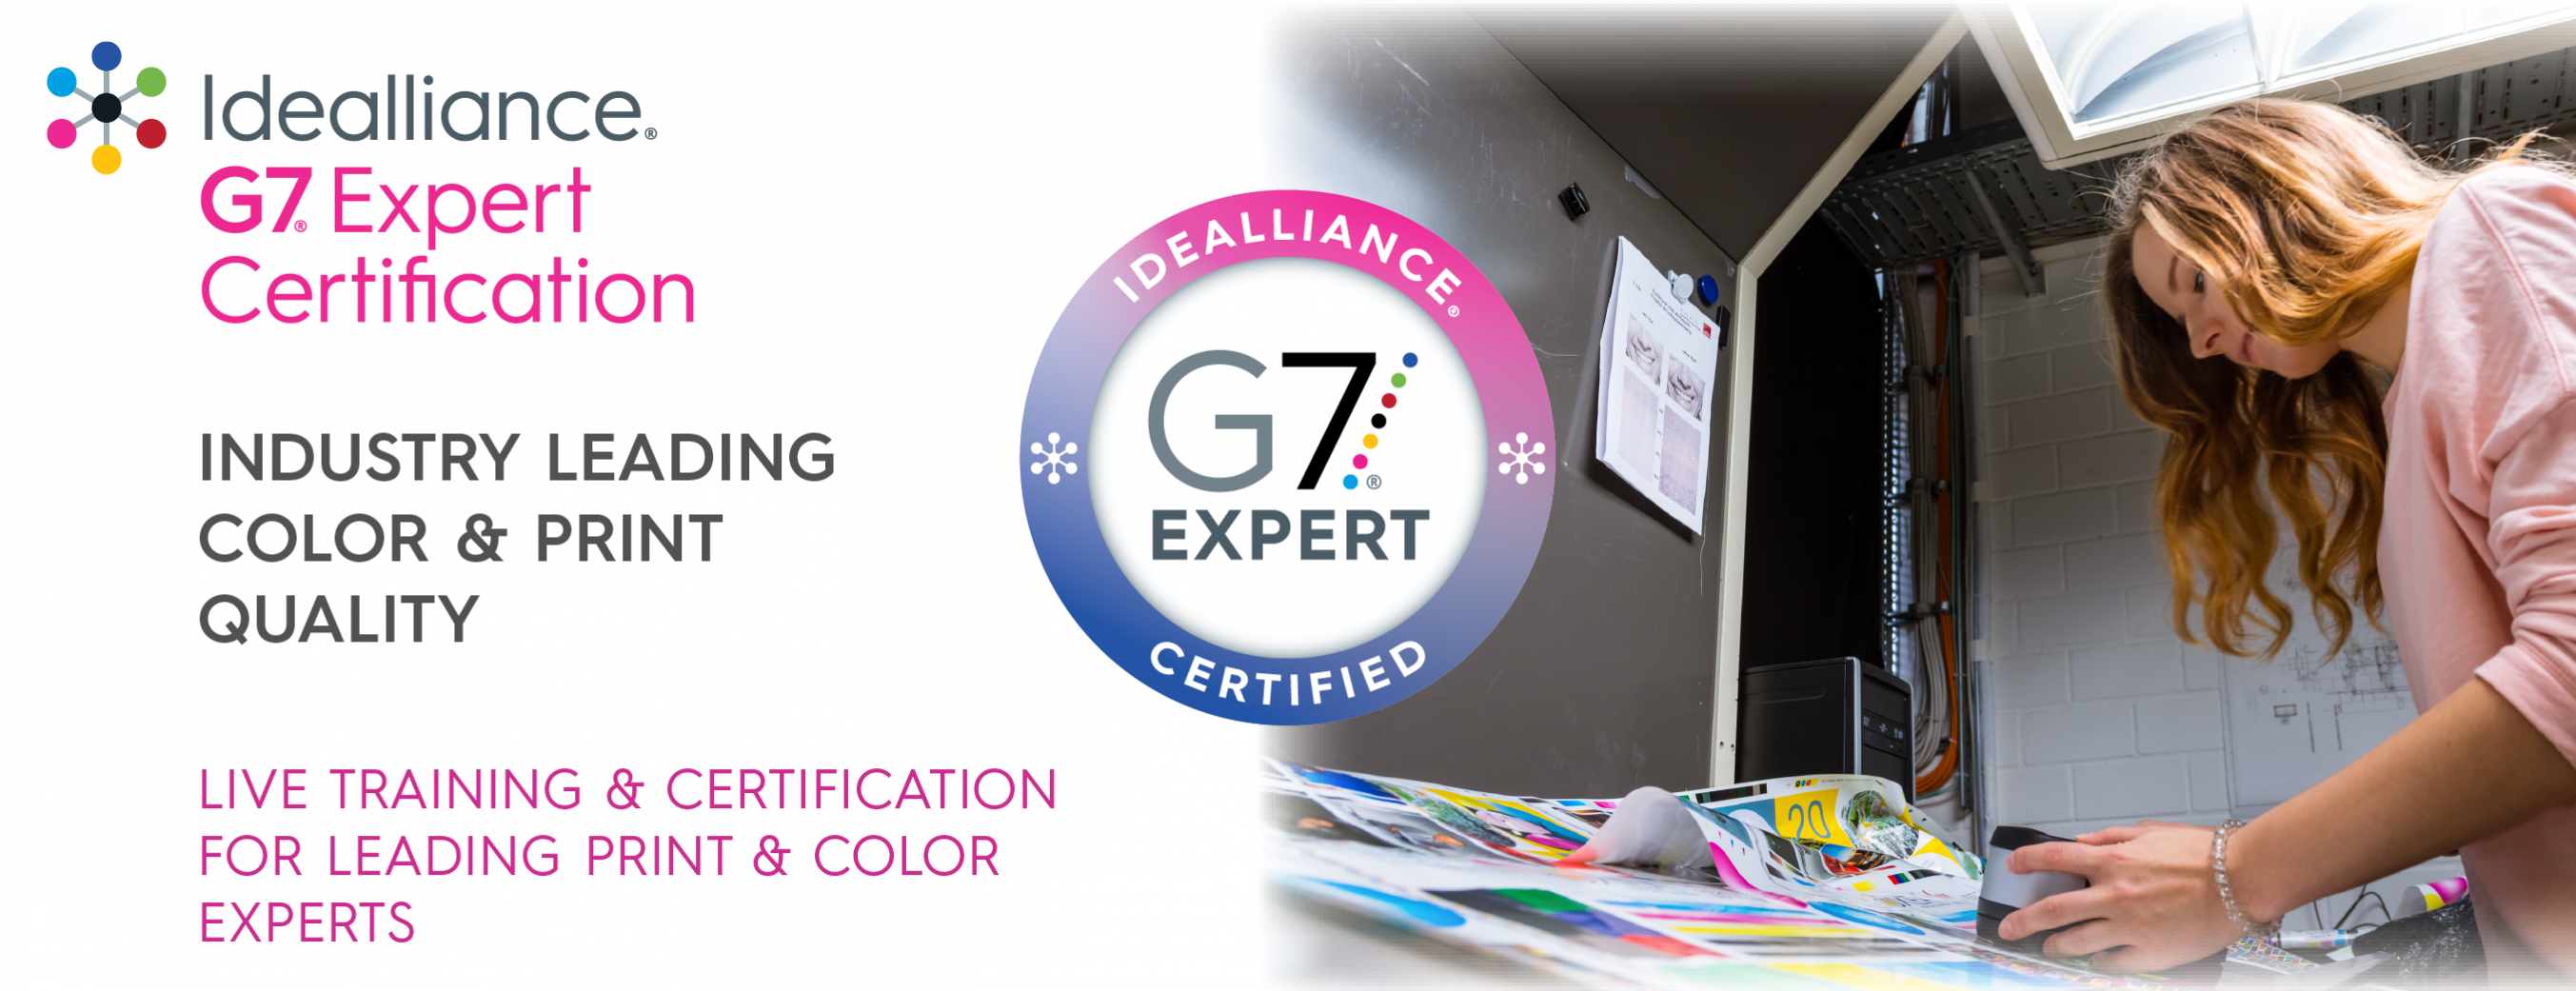 g7expert-banner-2022-clr-01-2706x1041.png